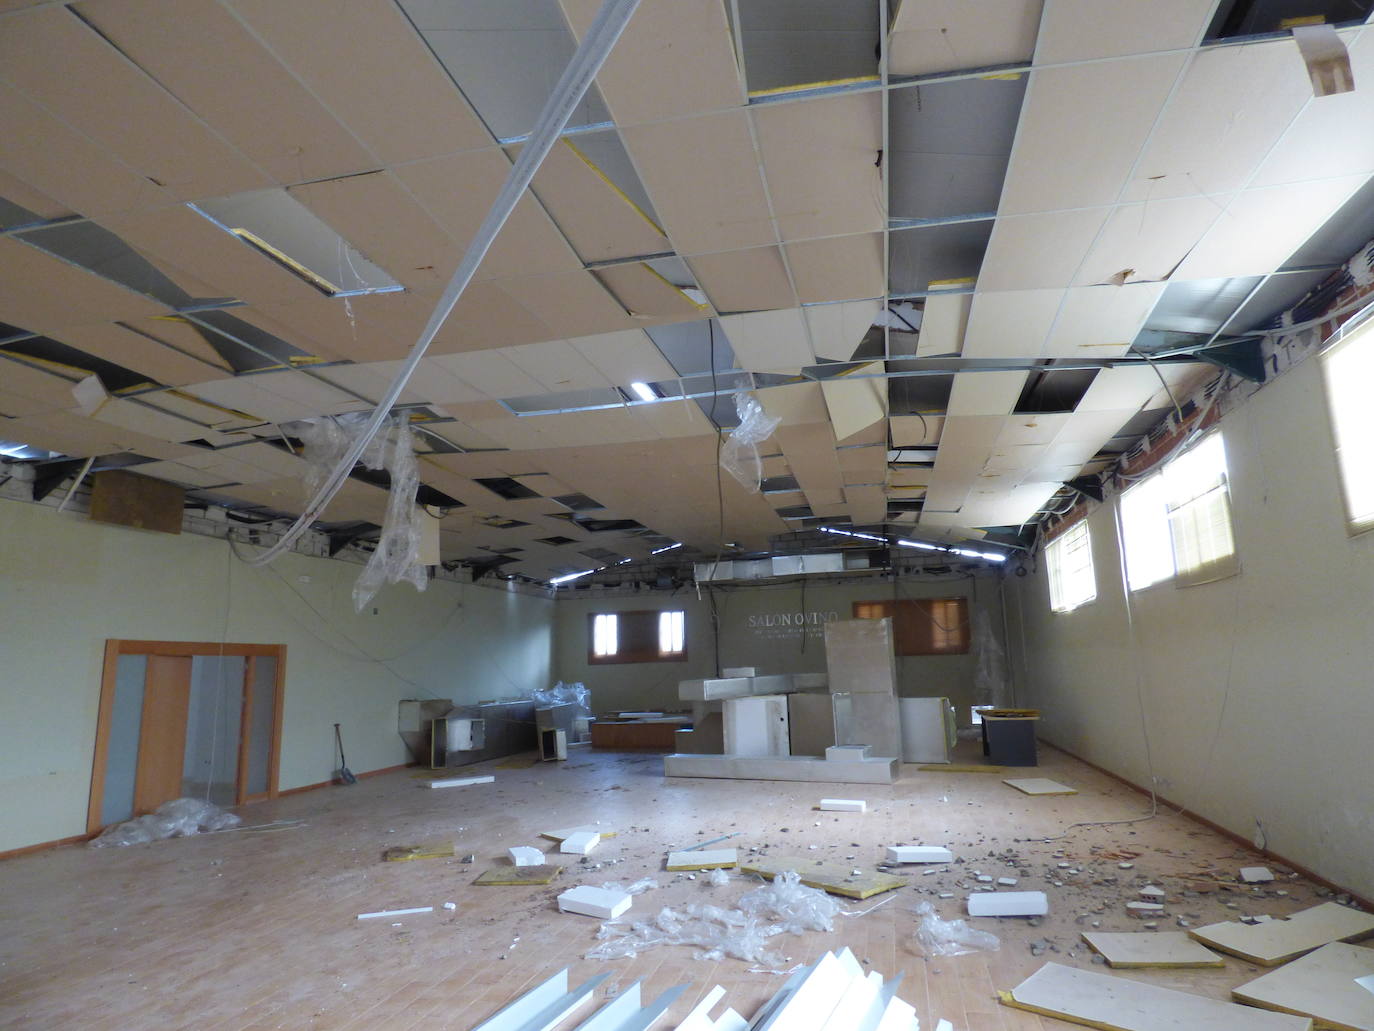 Las instalaciones del Salón del Ovino se someten a una profunda remodelación